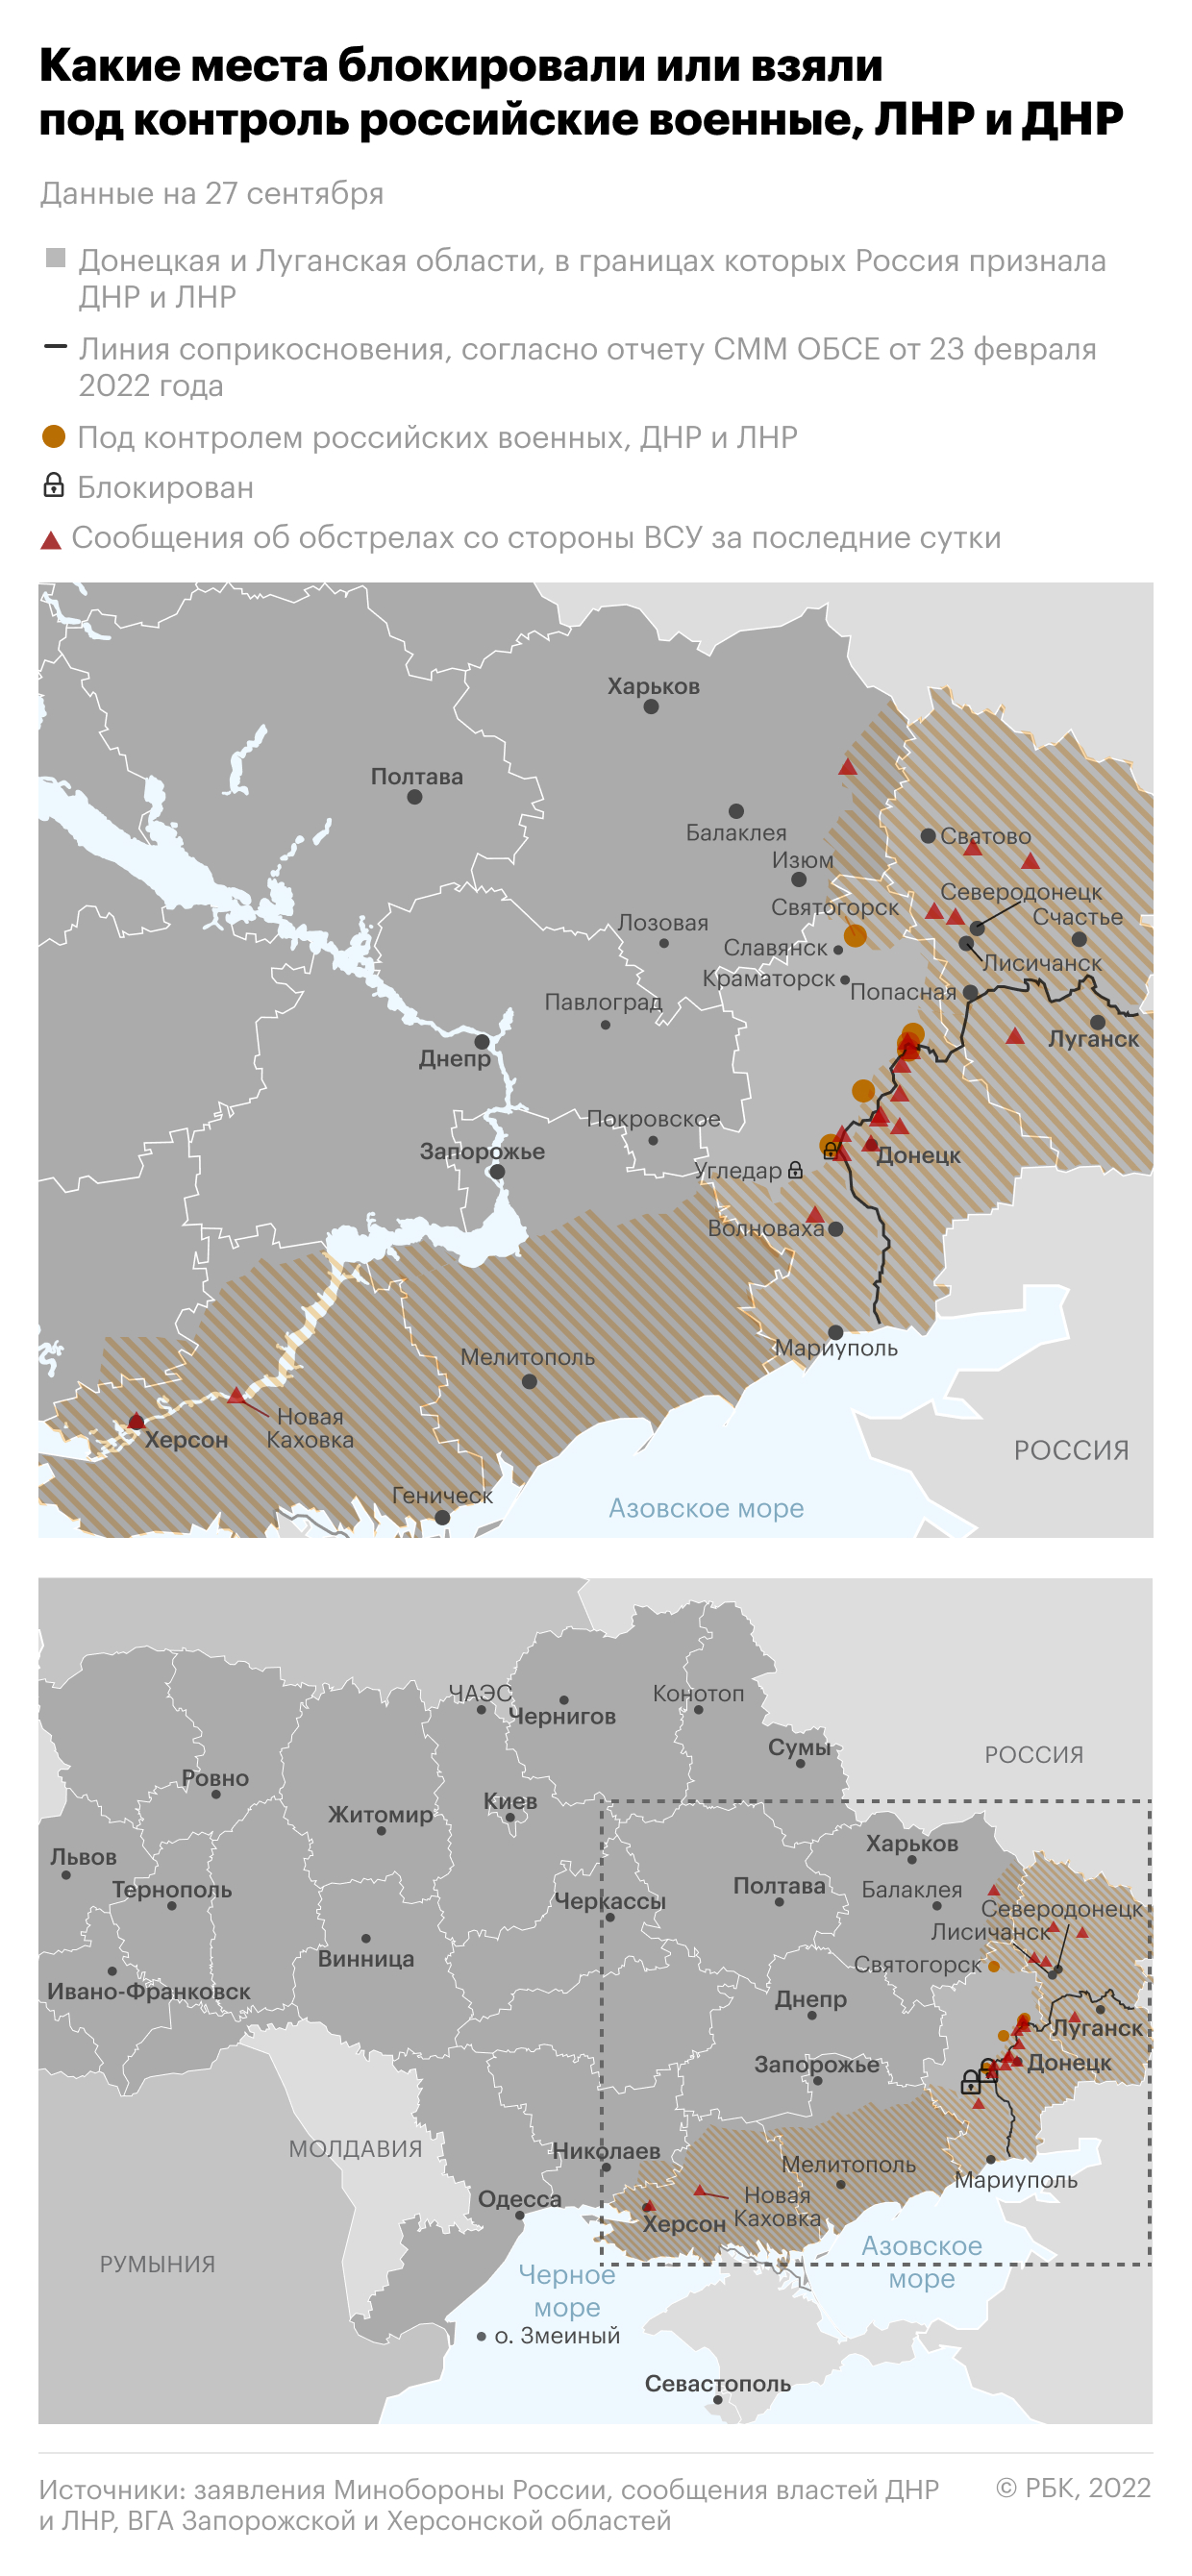 Референдумы в ДНР, ЛНР, Херсонской и Запорожской областях. Главное"/>













